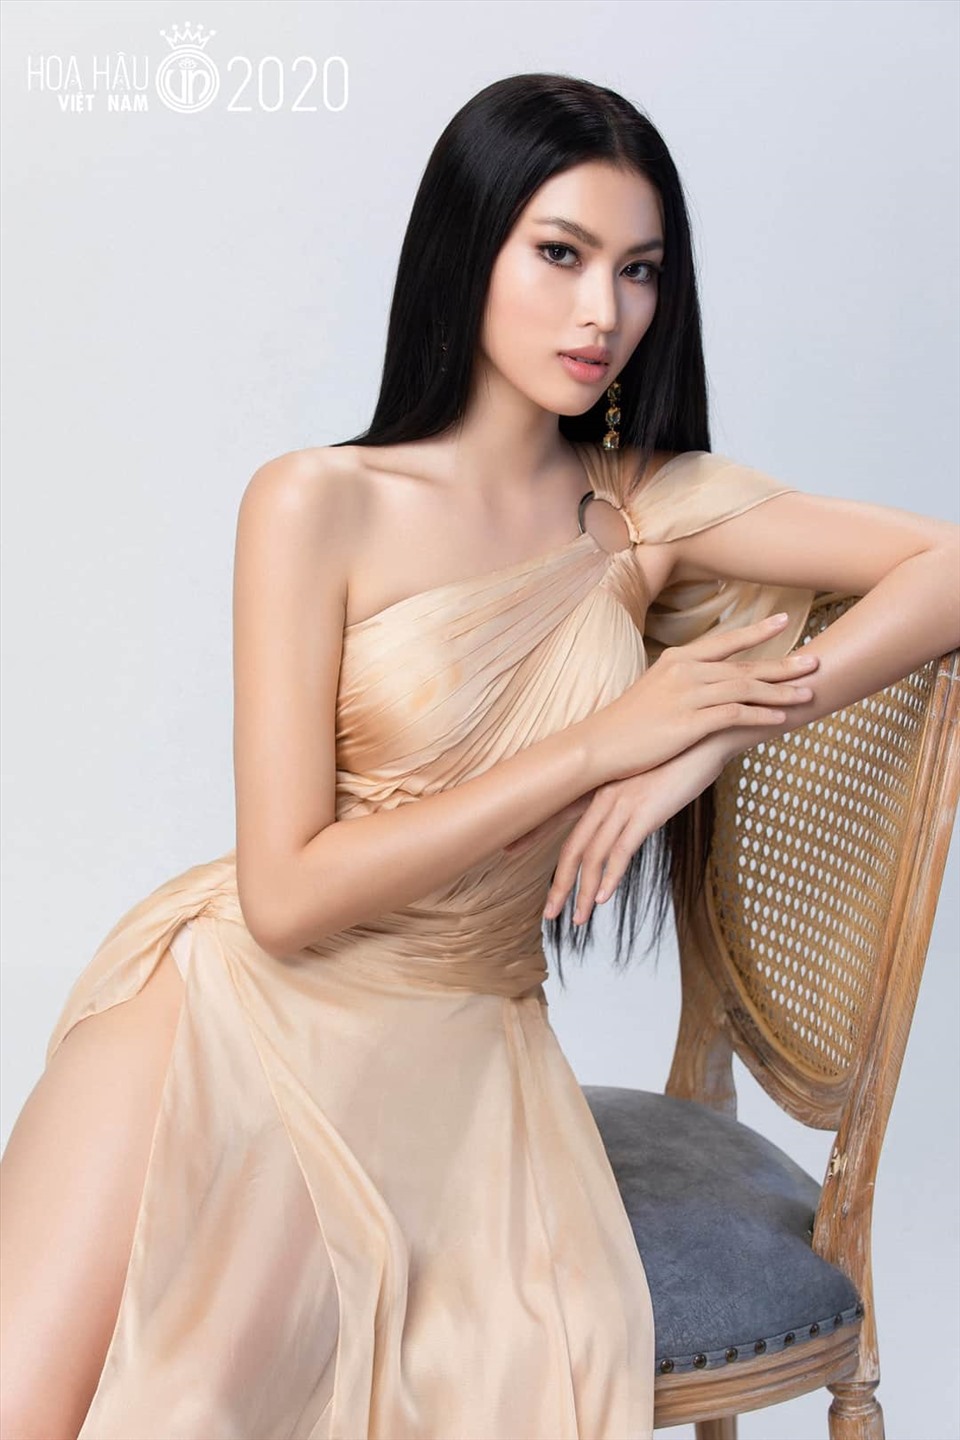 Nguyễn Lê Ngọc Thảo sinh năm 2000 tại TP. Hồ Chí Minh. Cô được nhiều người kỳ vọng sẽ kế nhiệm Hoa hậu Tiểu Vy. Ảnh: Sen Vàng.